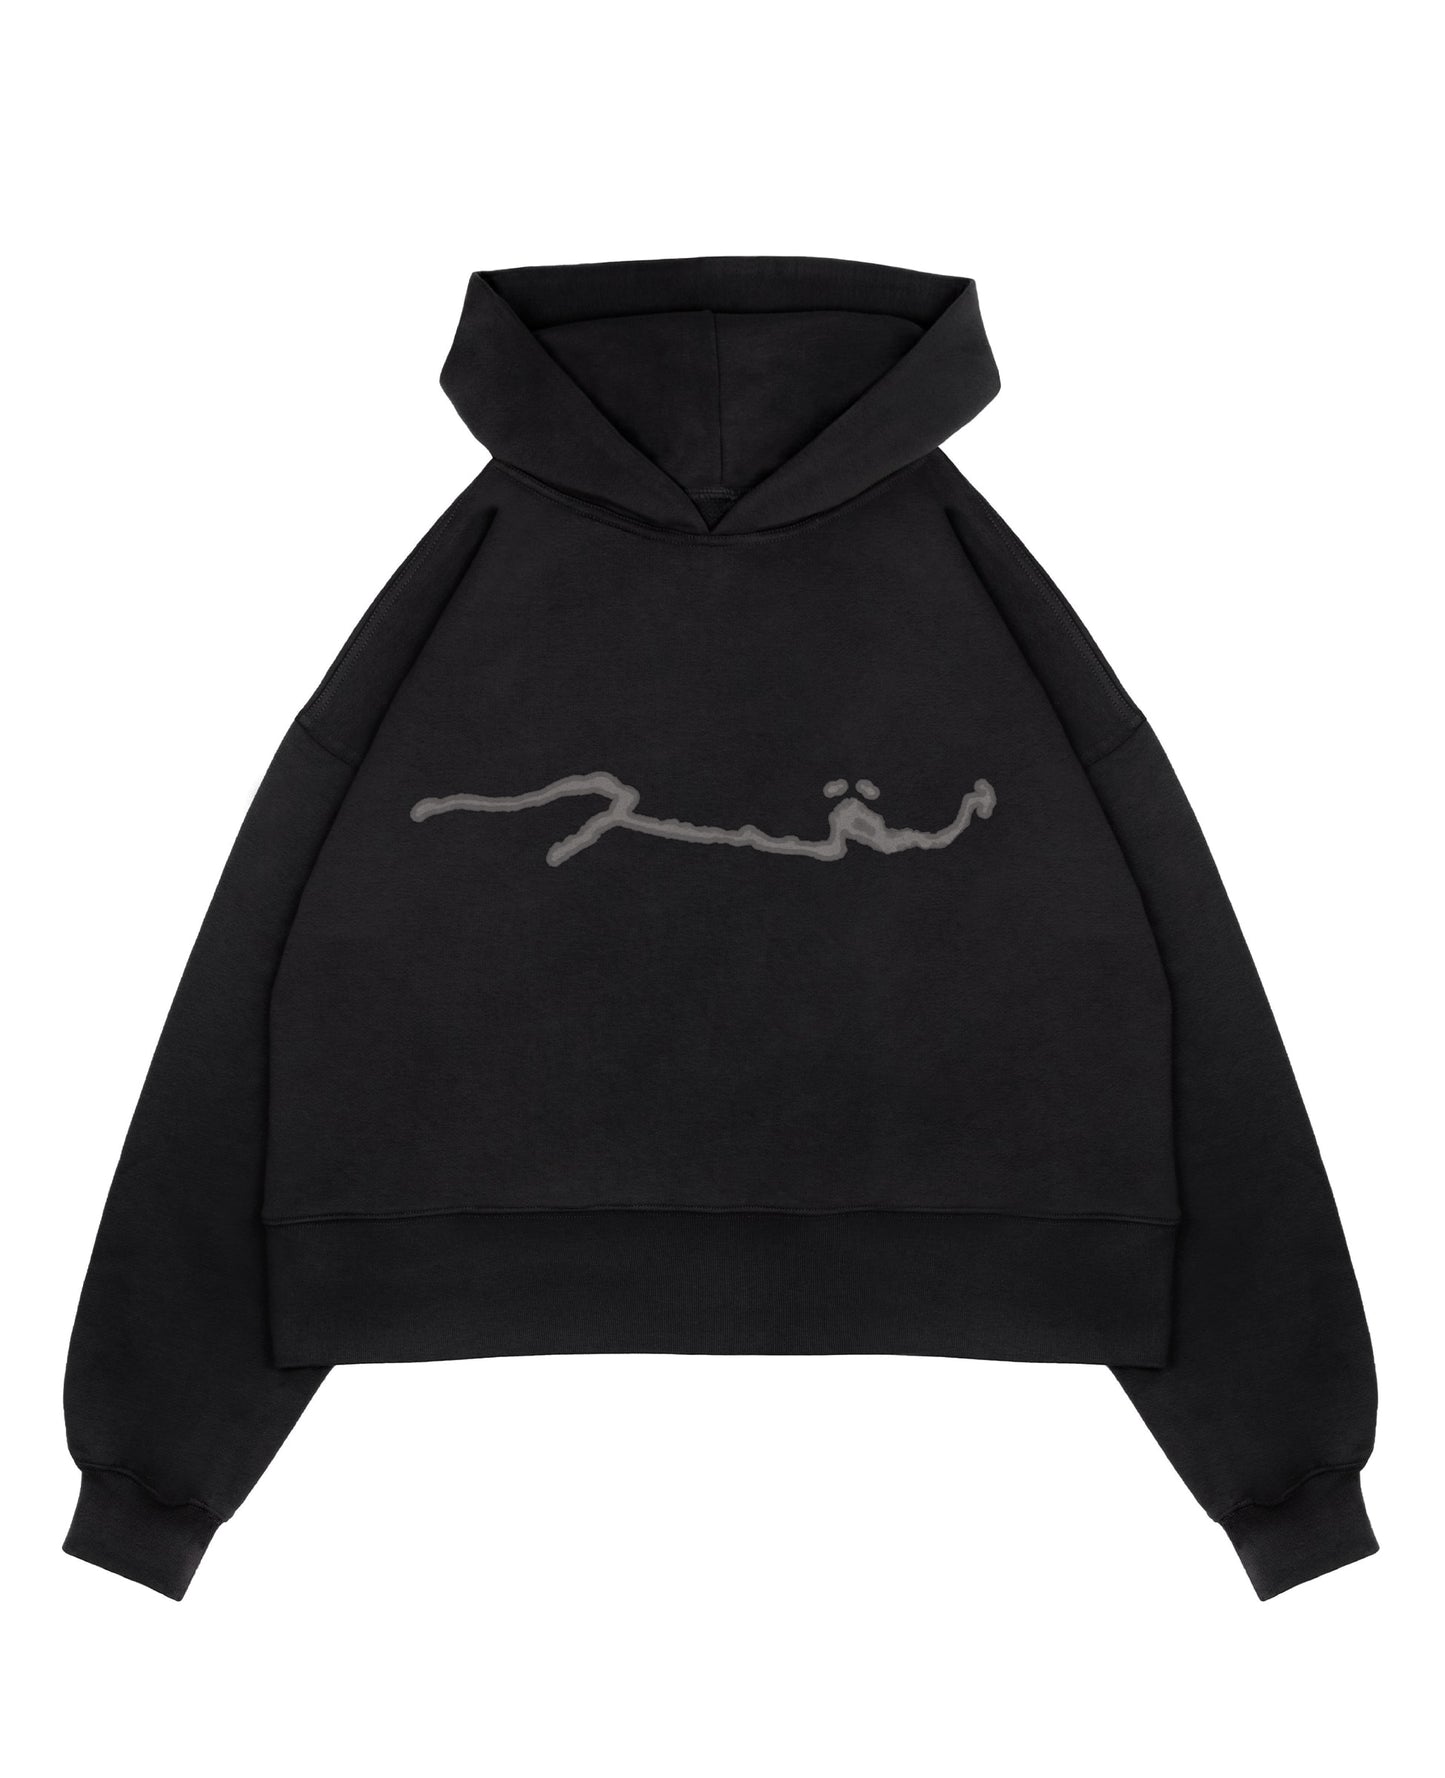 re signed hoodie - black